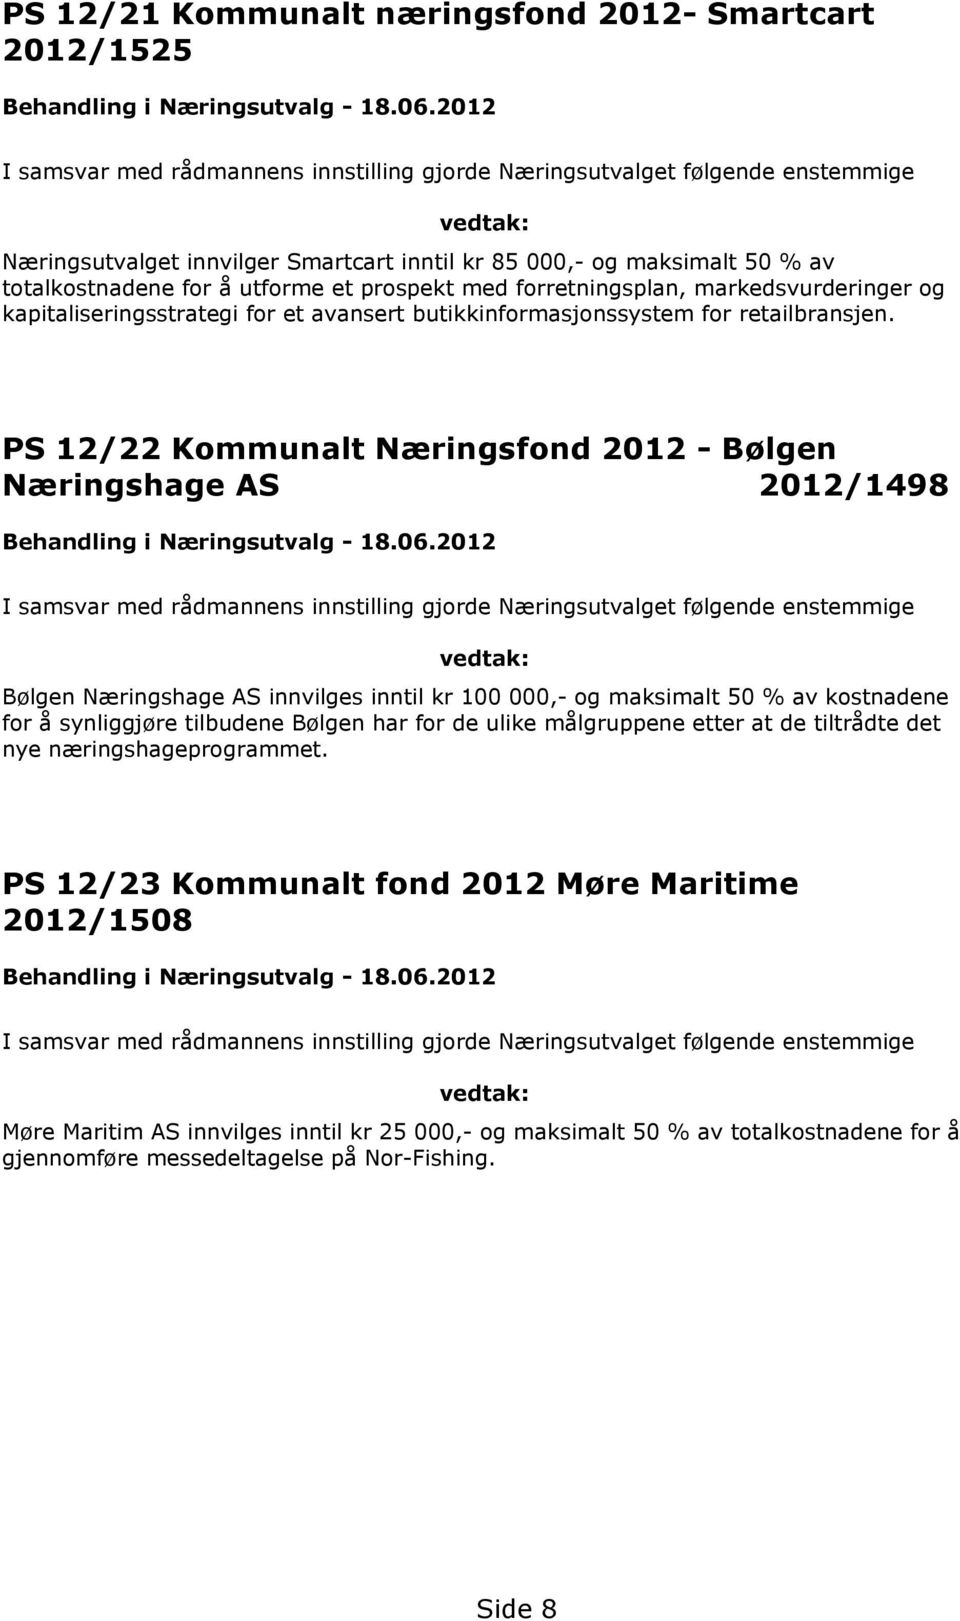 PS 12/22 Kommunalt Næringsfond 2012 - Bølgen Næringshage AS 2012/1498 Bølgen Næringshage AS innvilges inntil kr 100 000,- og maksimalt 50 % av kostnadene for å synliggjøre tilbudene Bølgen